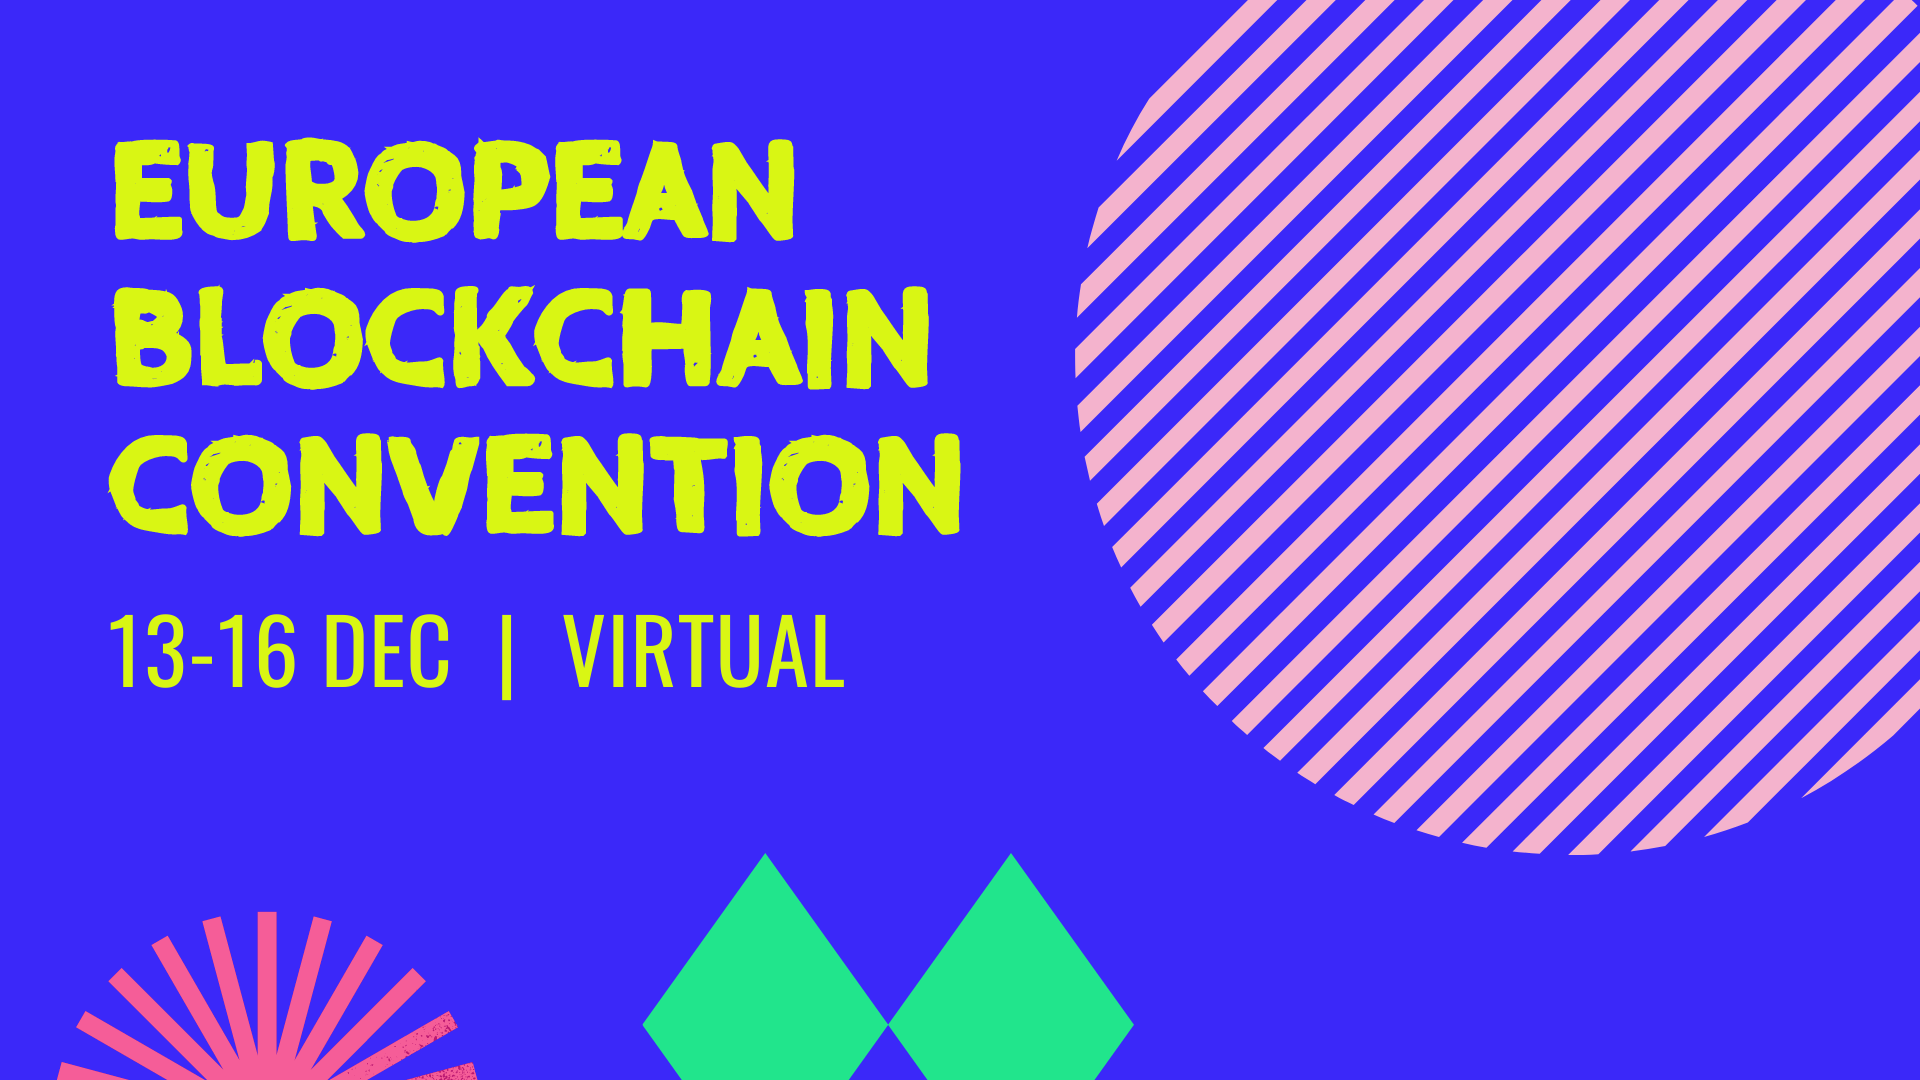 6th European Blockchain Convention organized by European blockchain convention